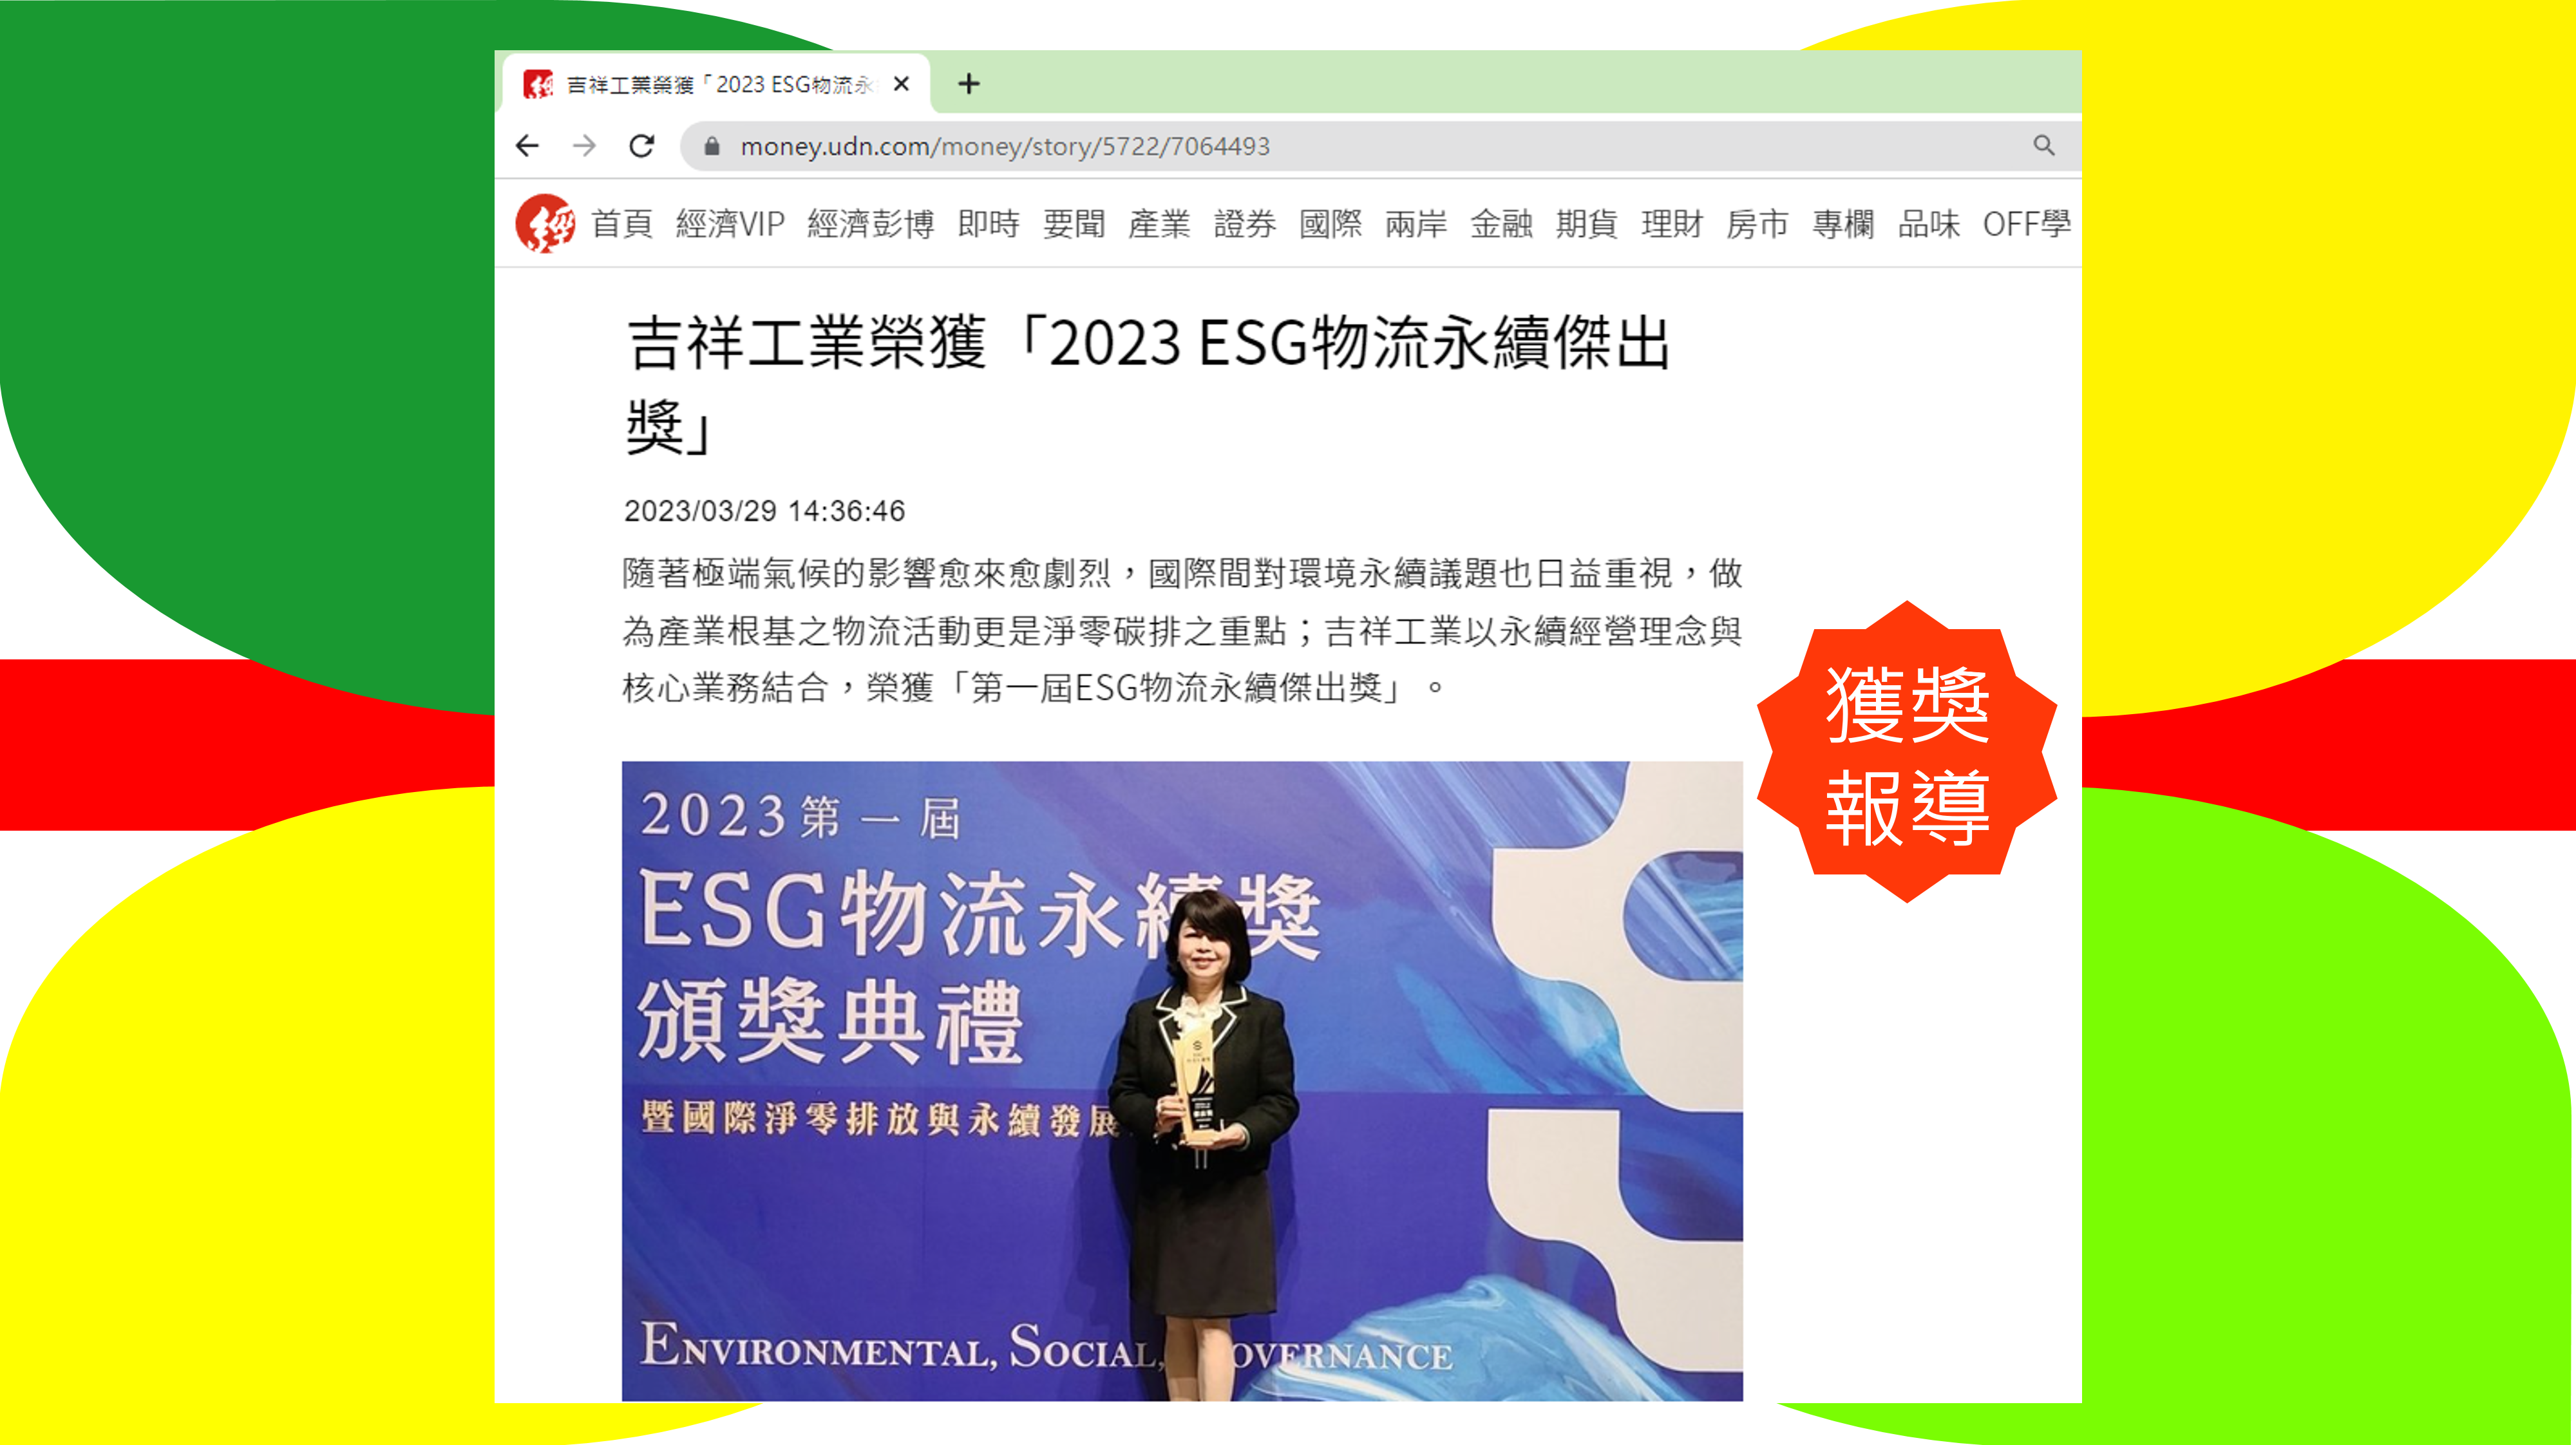 吉祥工業榮獲「2023 ESG物流永續傑出獎」